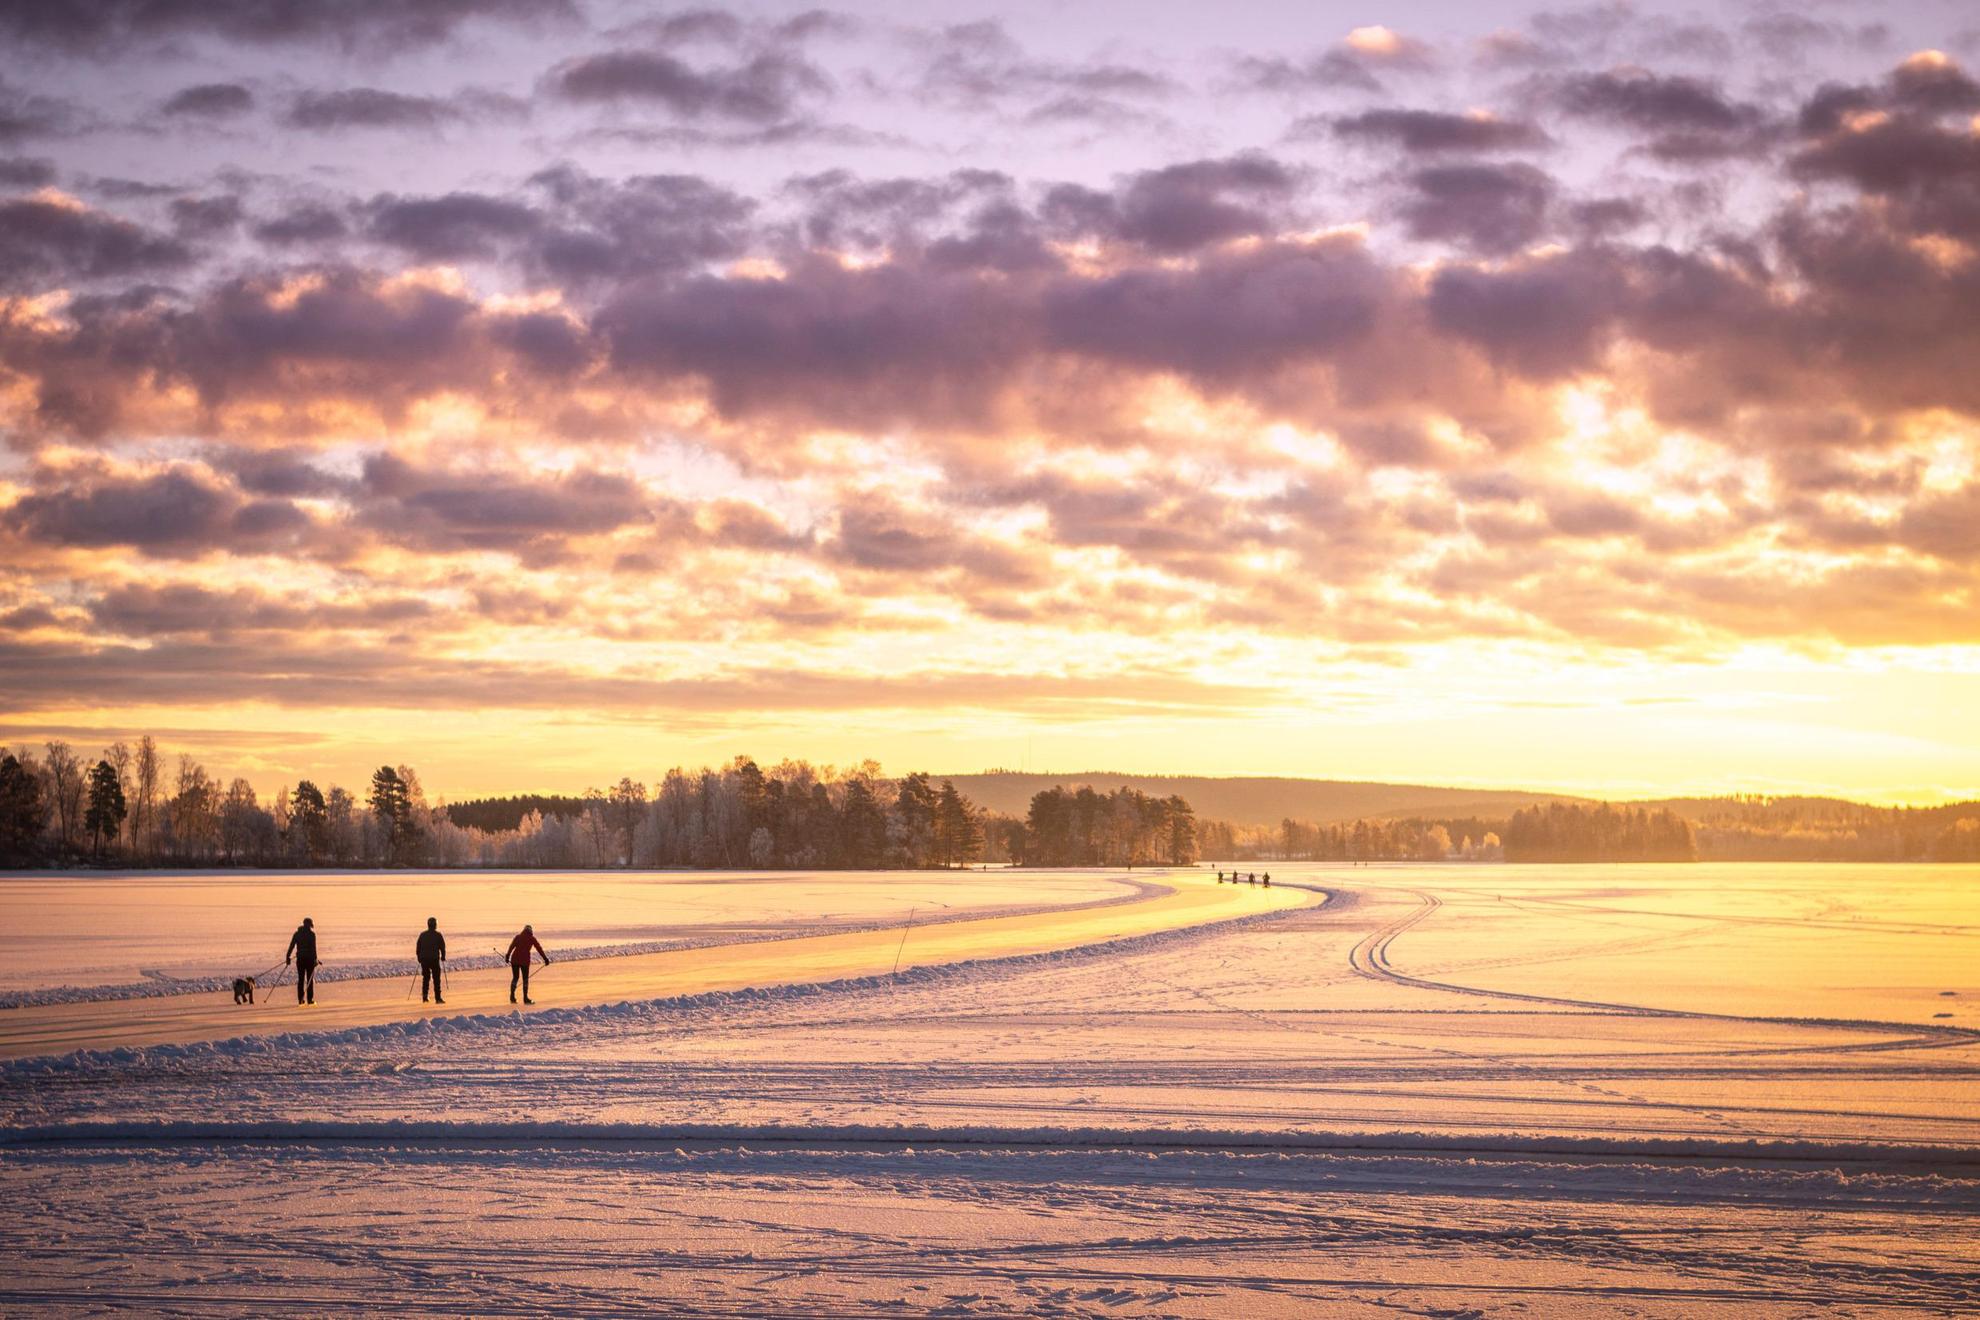 Die Silhouette von drei Personen beim Schlittschuhlaufen auf einem zugefrorenen See. Die Sonne leuchtet orange.